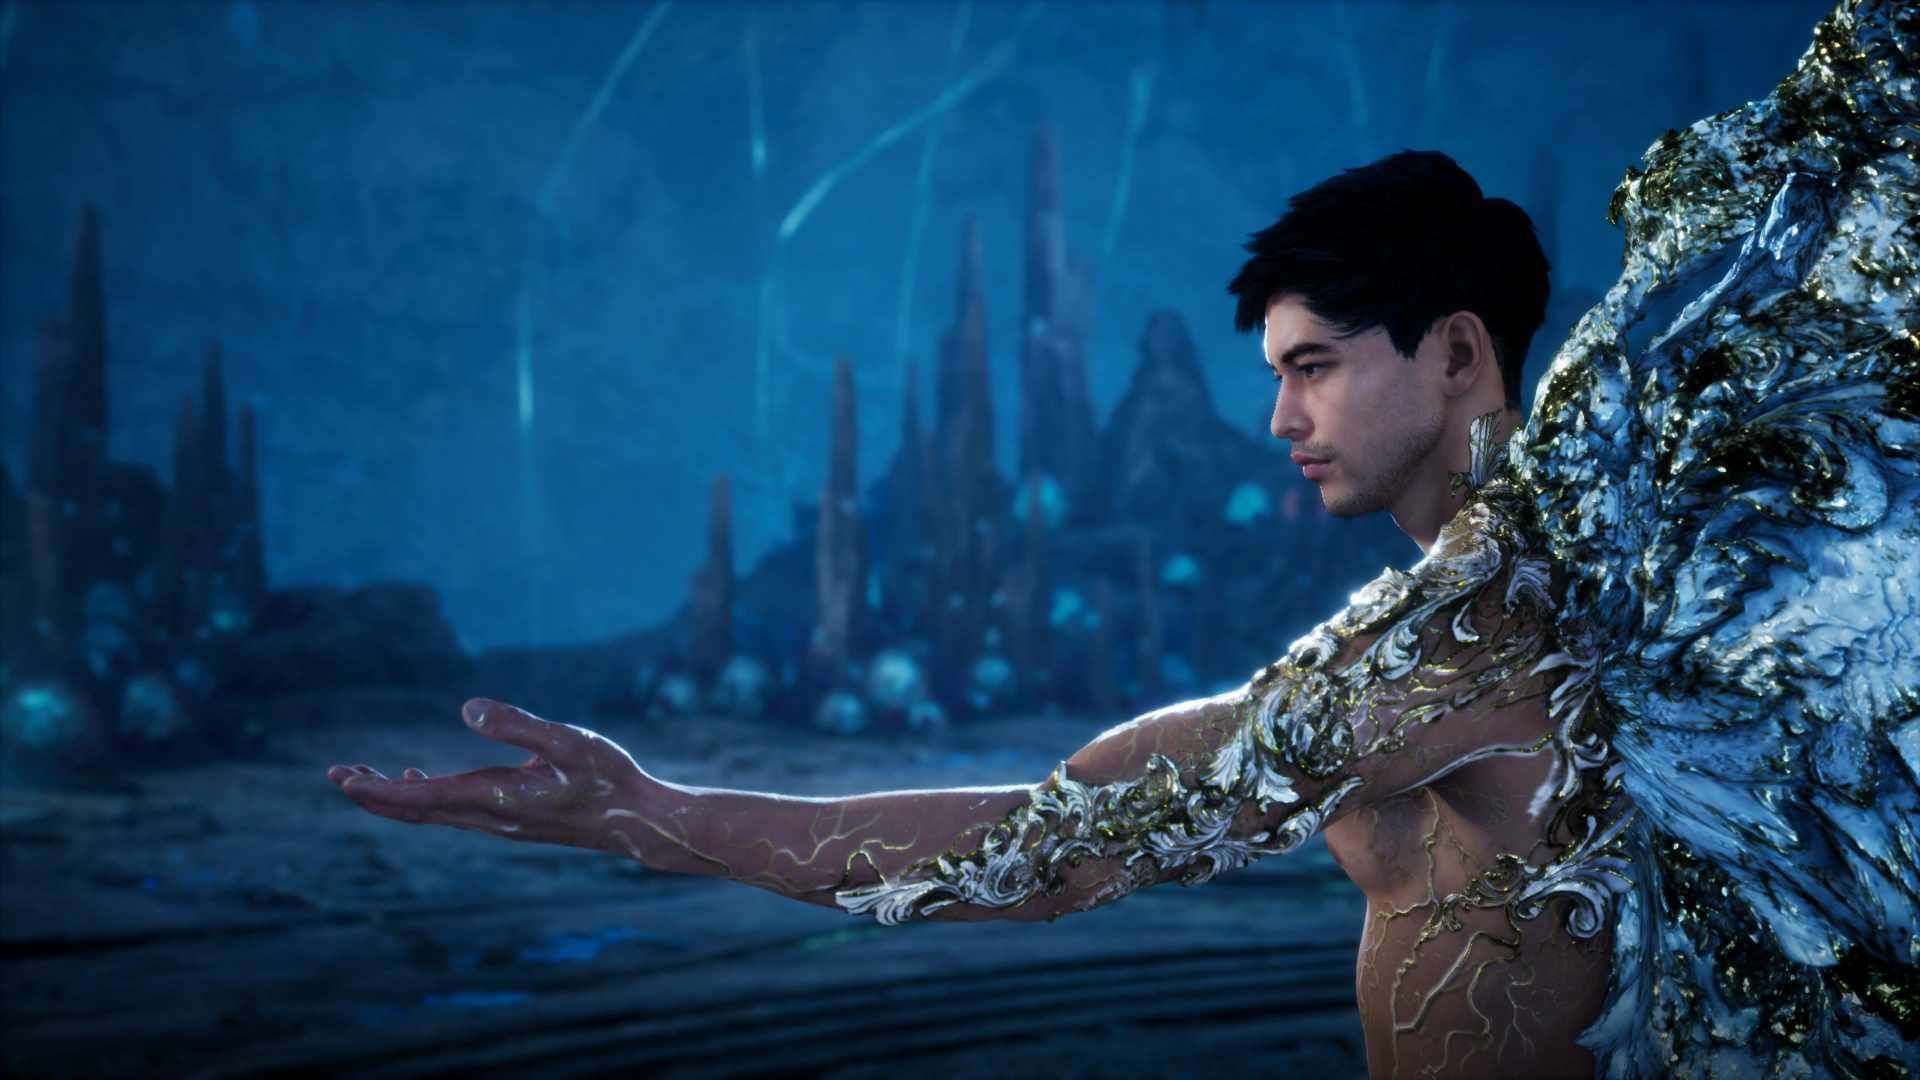 Adam oferece a mão para Eva em uma paisagem azul.  Seu lado esquerdo tem estranhas marcas azuis e brancas.